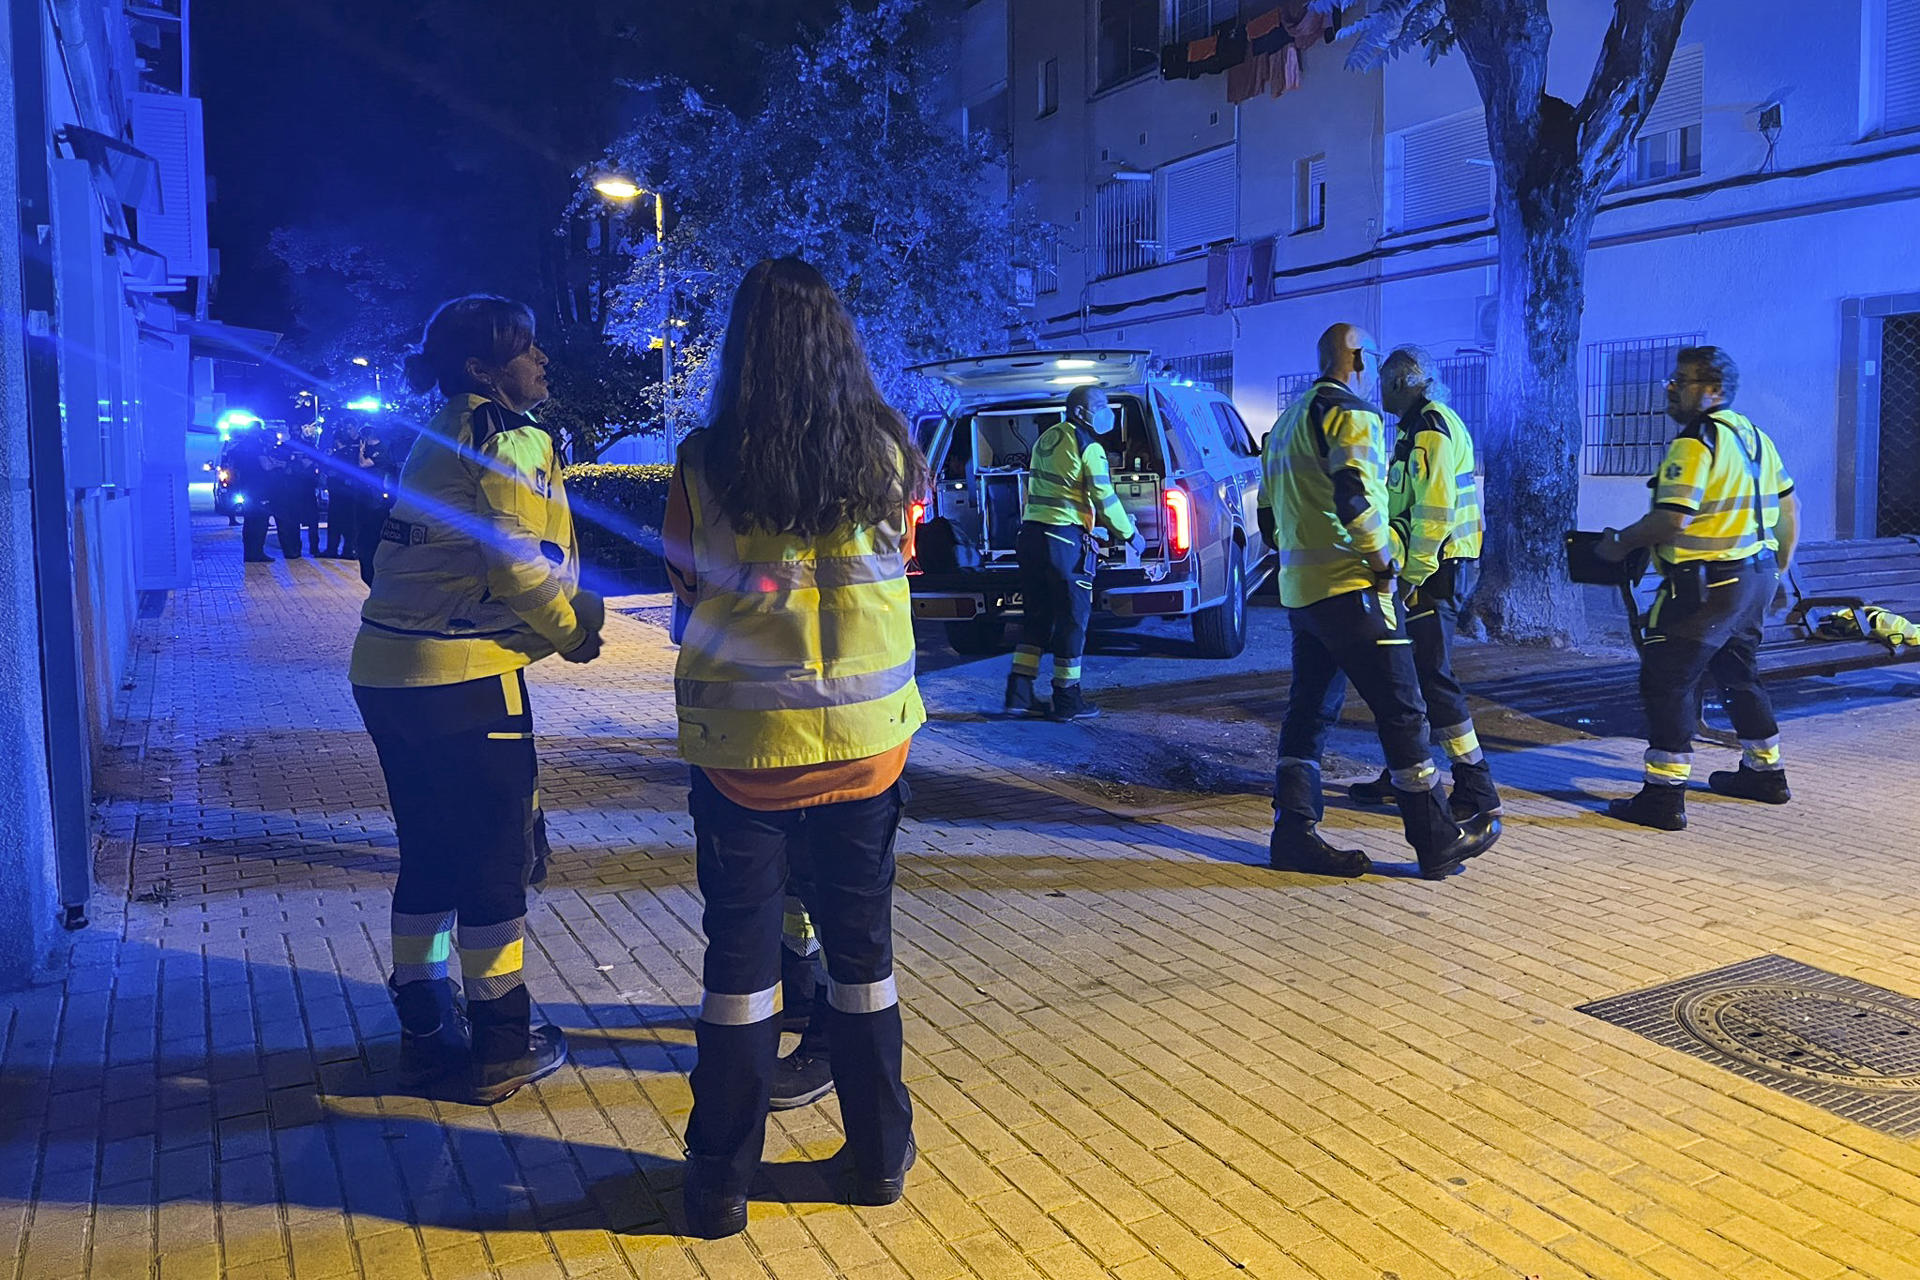 Efectivos del SAMUR-Protección Civil realizaron maniobras de reanimación a una mujer, de 30 años aproximadamente, que ha fallecido en el rellano de la escalera de un edificio de la calle Doña Francisquita en el barrio de Villaverde, en Madrid, como consecuencia de varias heridas de arma blanca. EFE/Emergencias Madrid -SOLO USO EDITORIAL/SOLO DISPONIBLE PARA ILUSTRAR LA NOTICIA QUE ACOMPAÑA (CRÉDITO OBLIGATORIO)-